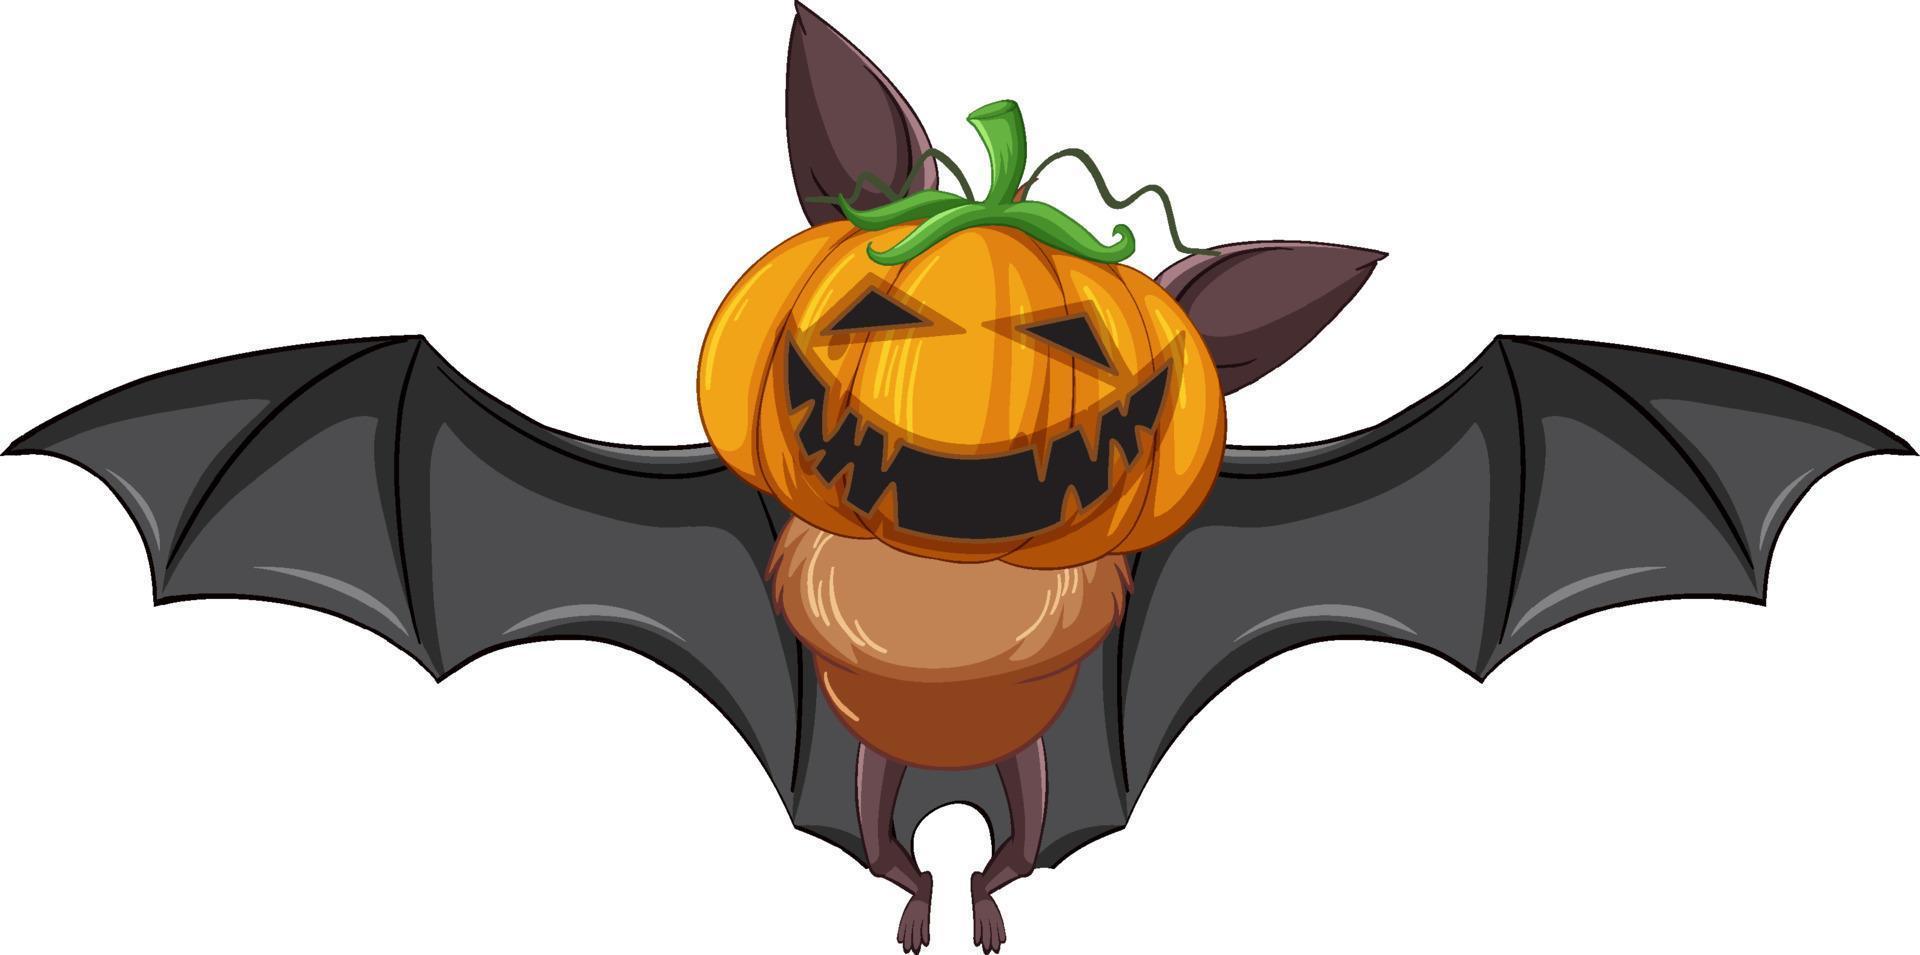 murciélago de dibujos animados con cabeza de jack-o'-lantern sobre fondo blanco vector